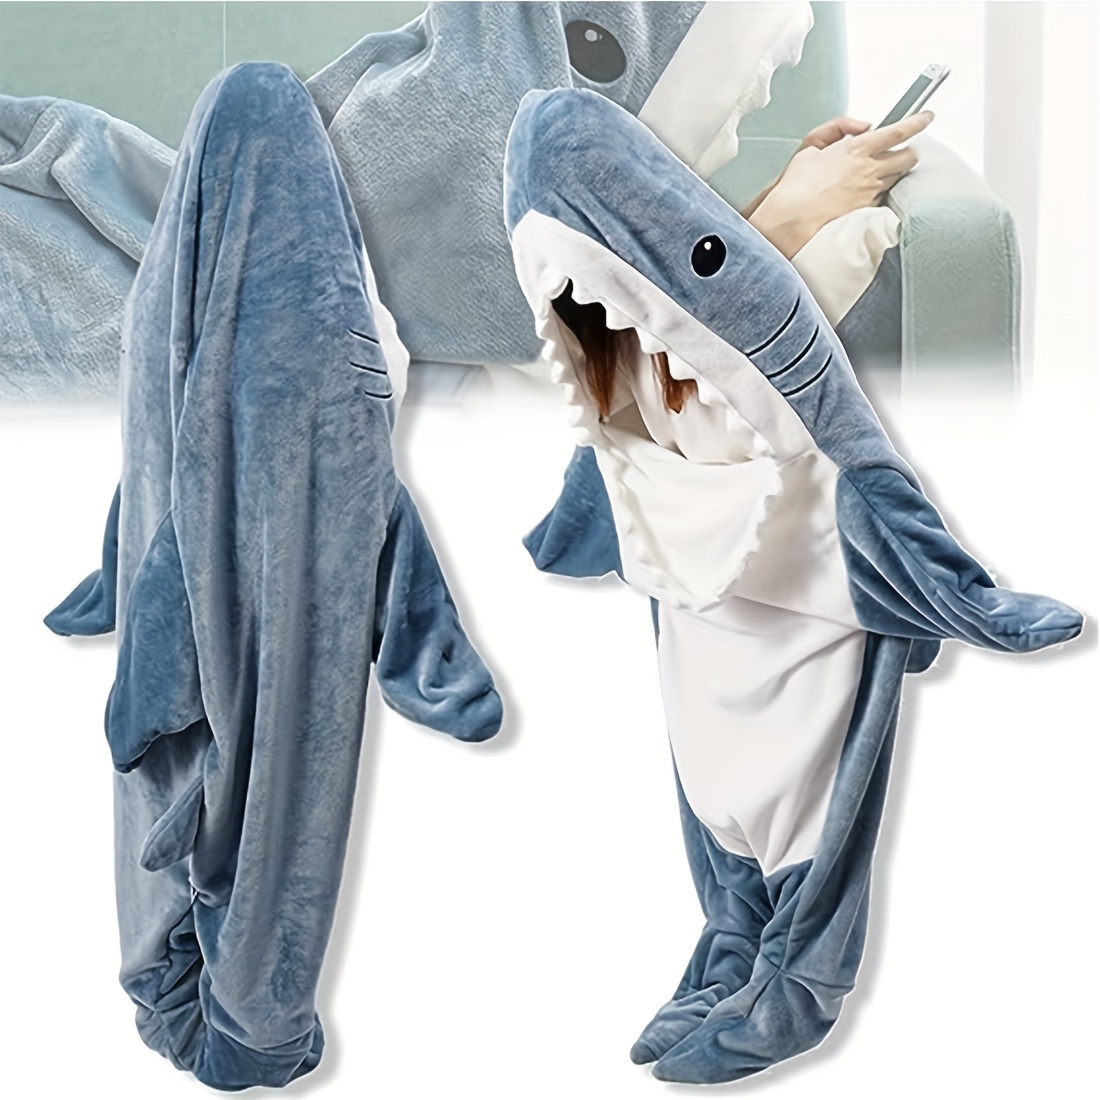  Manta acogedora de tiburón, manta CozyShark™, manta de tiburón,  manta de tiburón para adultos, manta de tiburón con capucha para adultos  (74.8 x 35.5 pulgadas de largo para adultos o mujeres